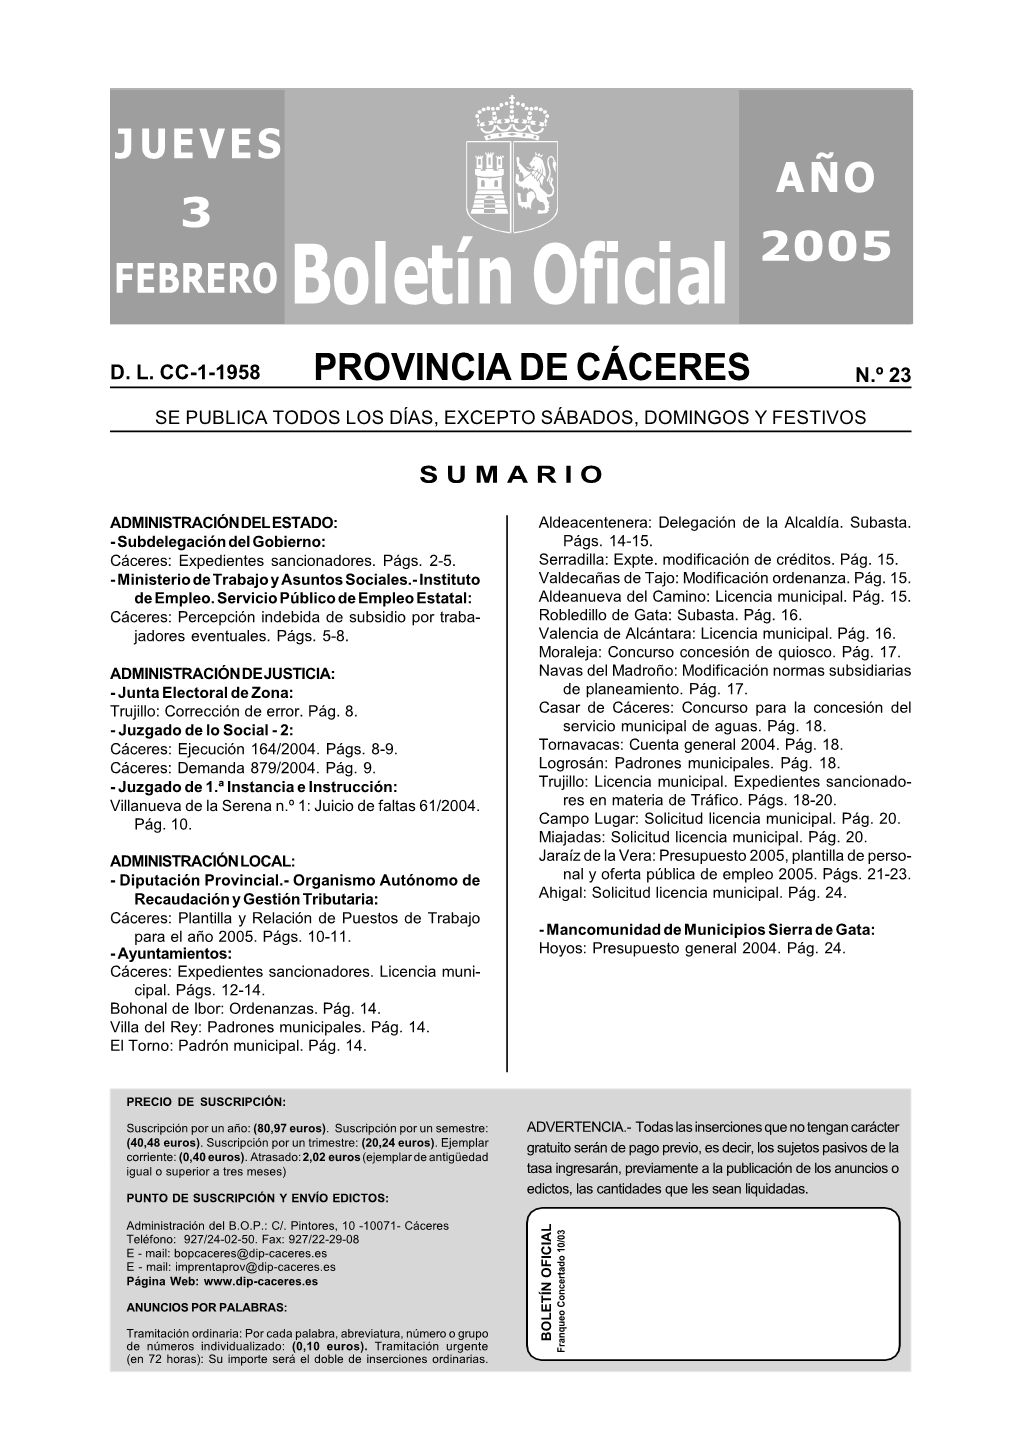 Boletín Oficial JUEVES AÑO 2005